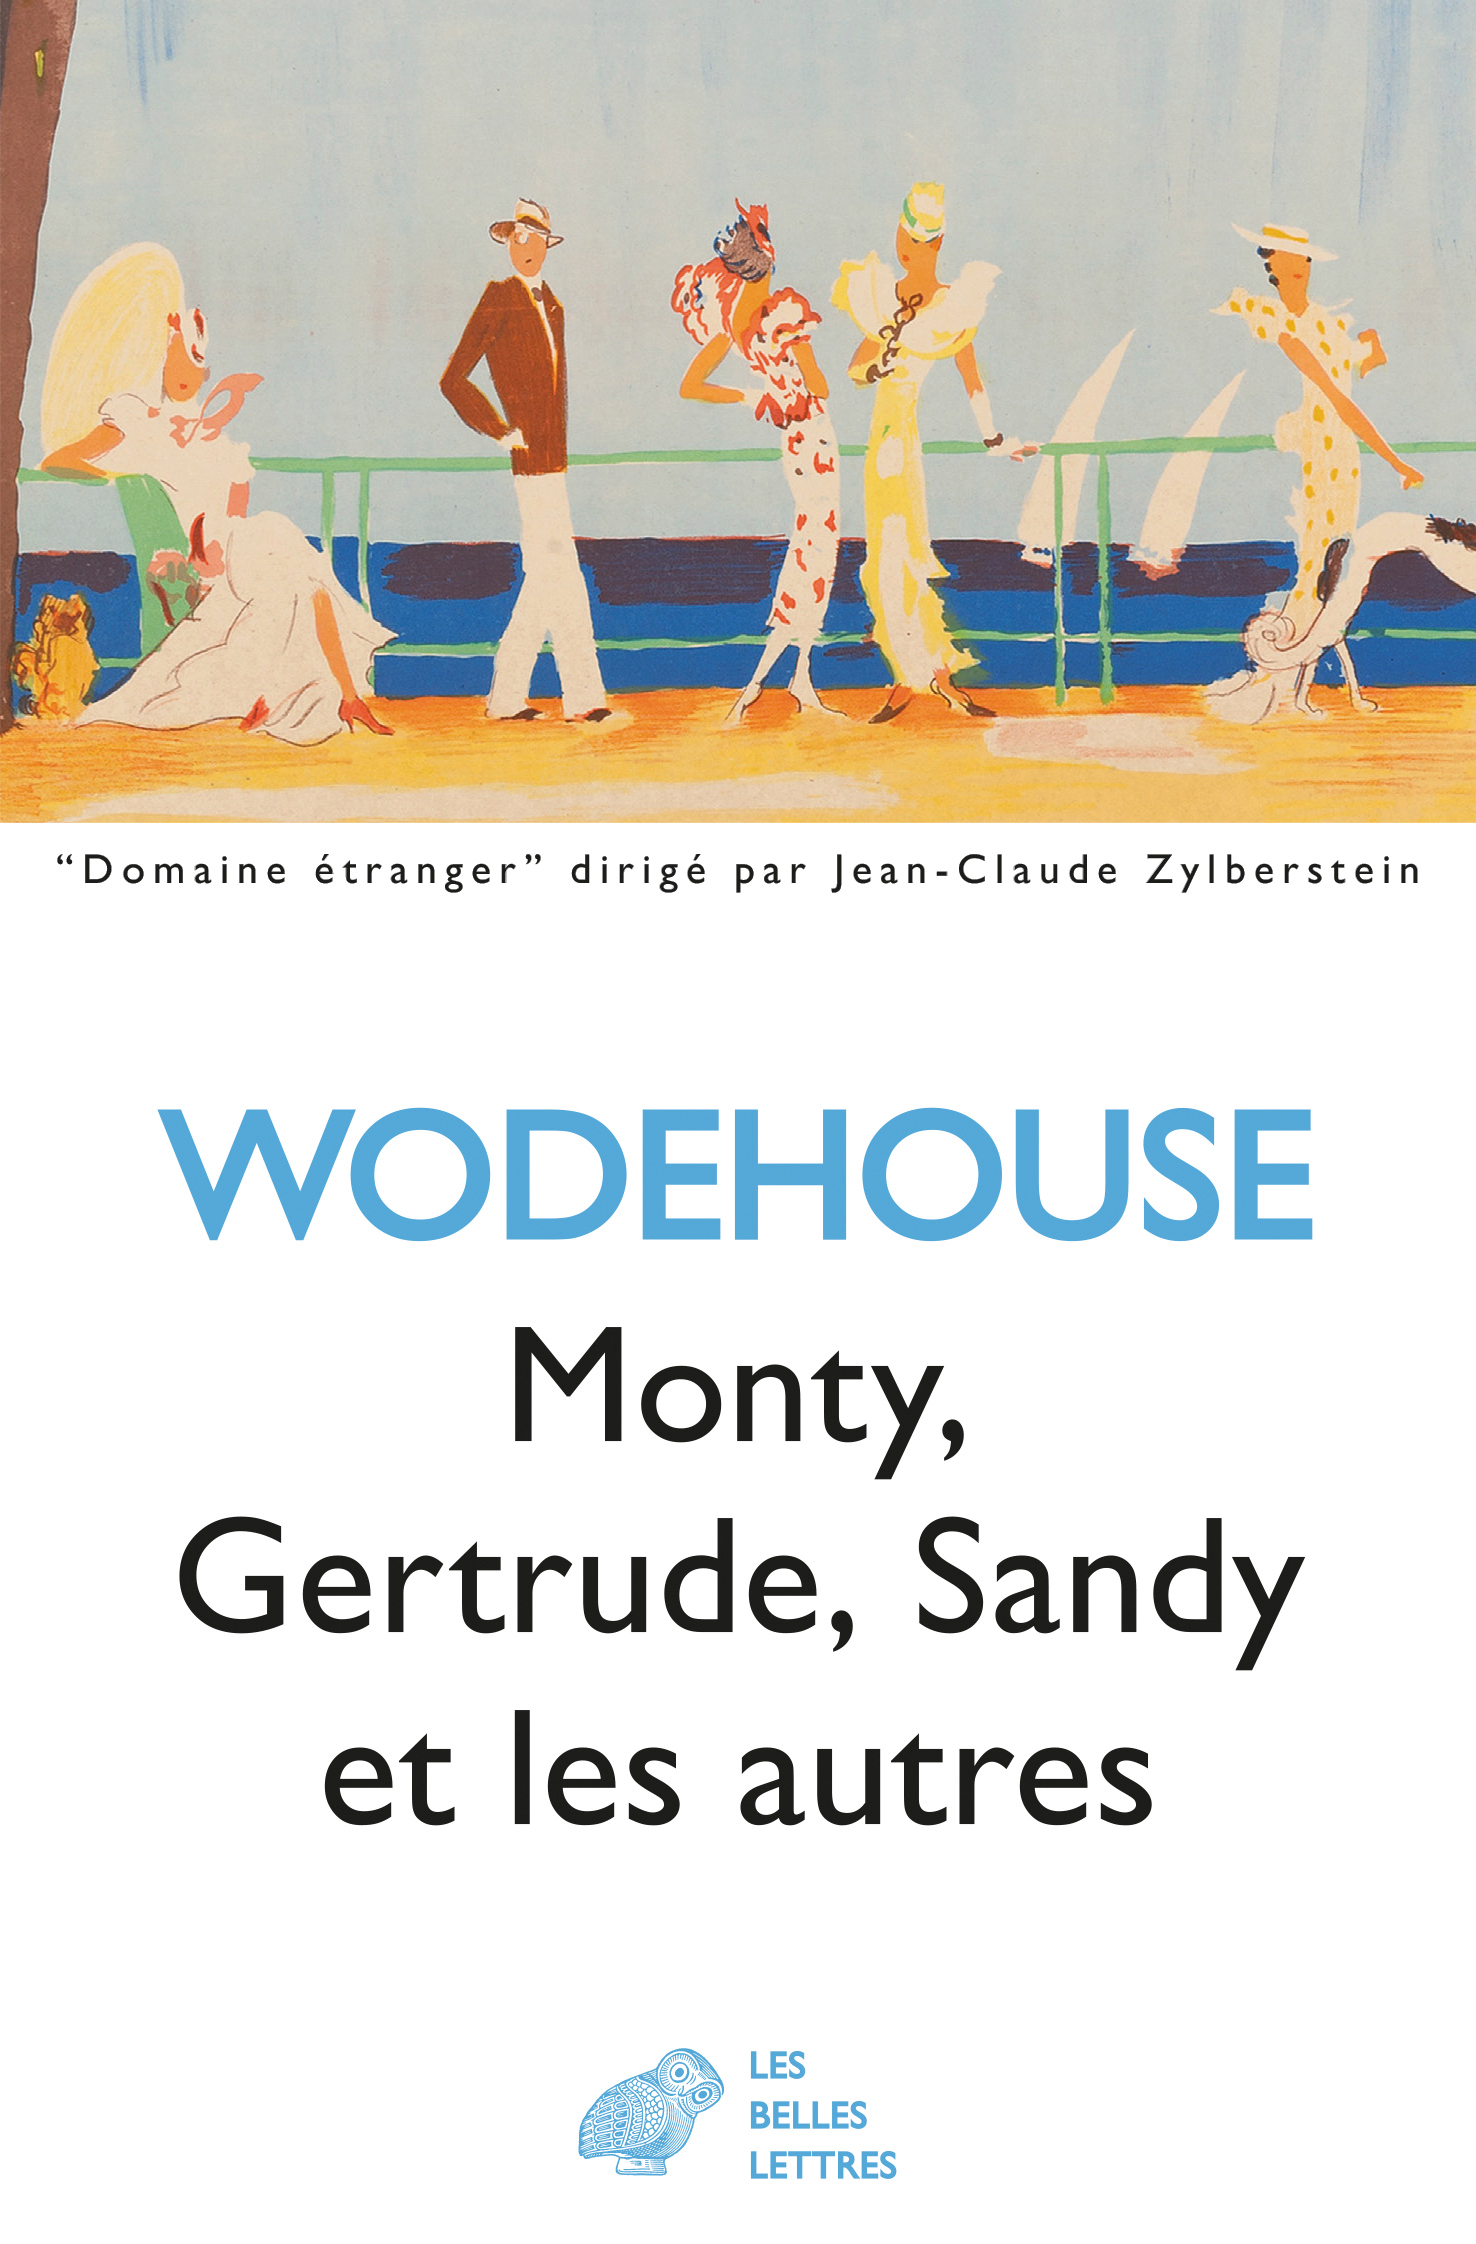 Monty, Gertrude, Sandy et les autres | Wodehouse, Pelham Grenville